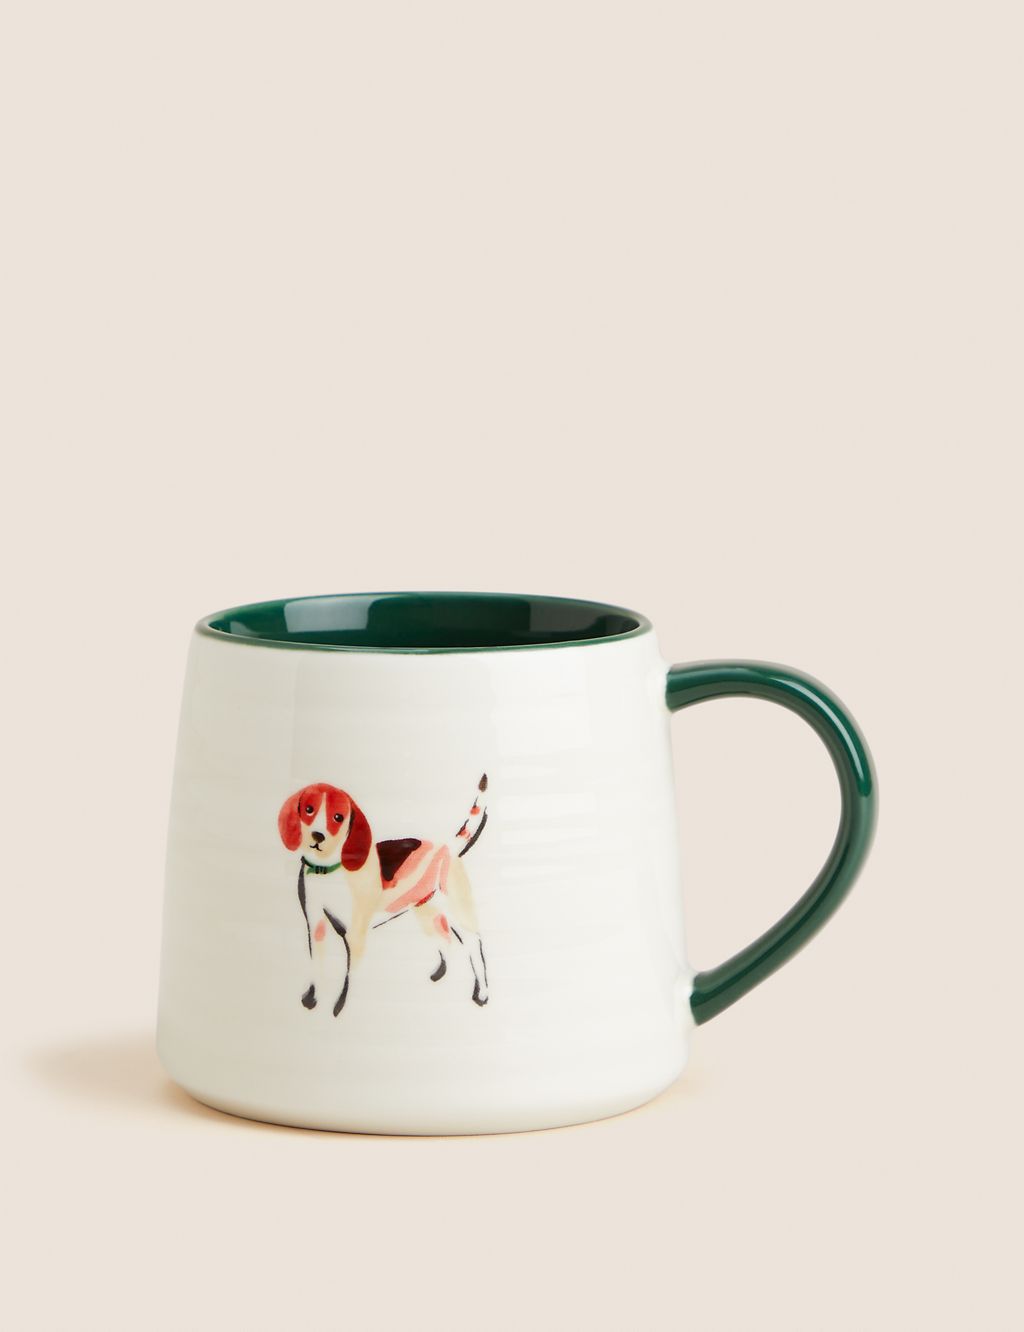 Beagle Dog Mug 3 of 3